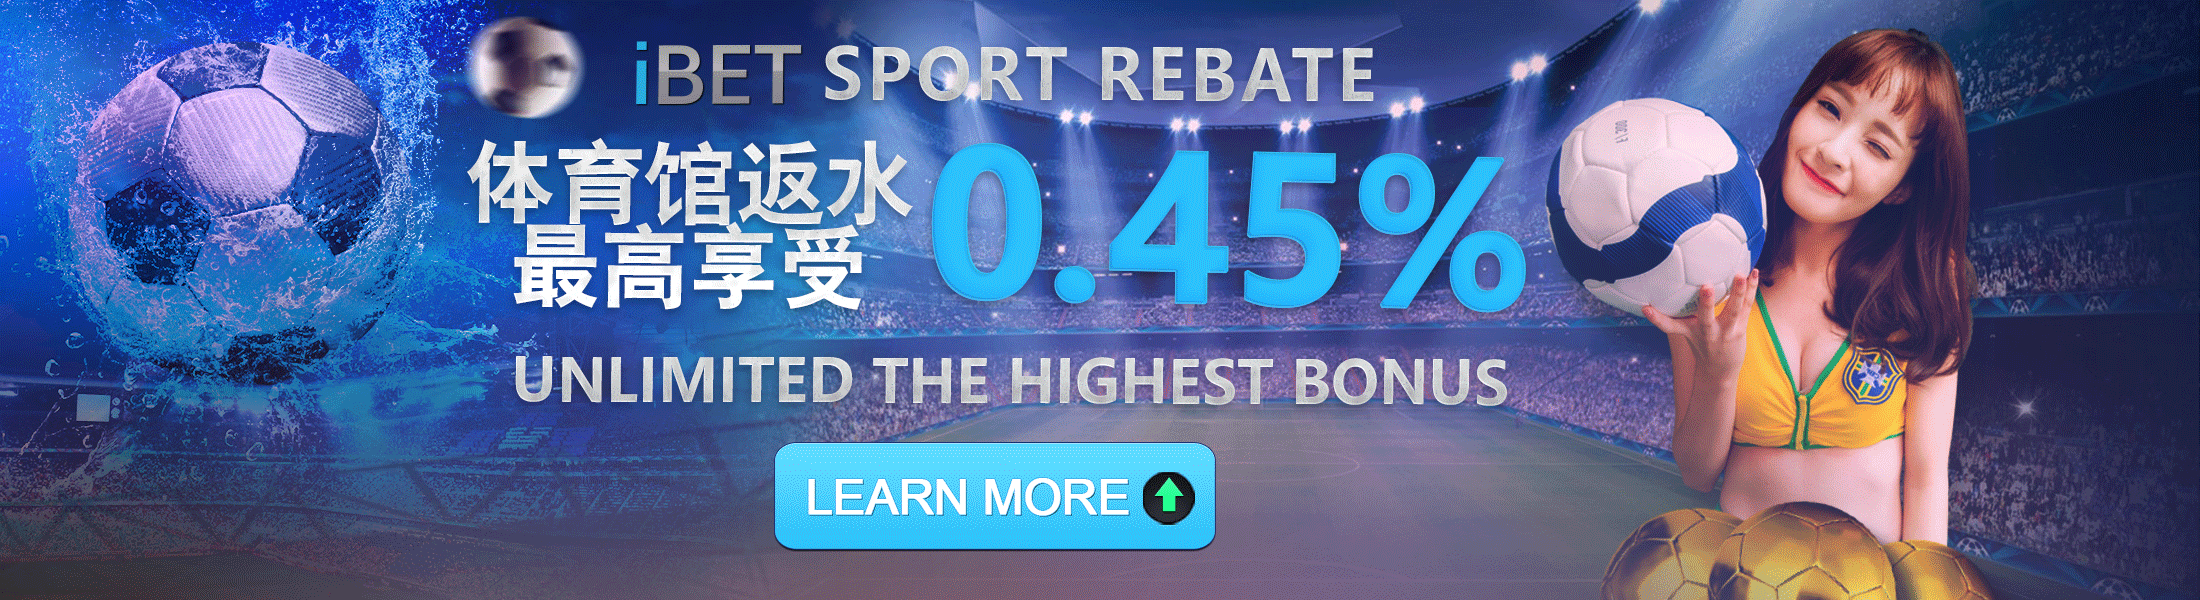 iBET Sportsbook Cash Rebate 0.35%+0.1%